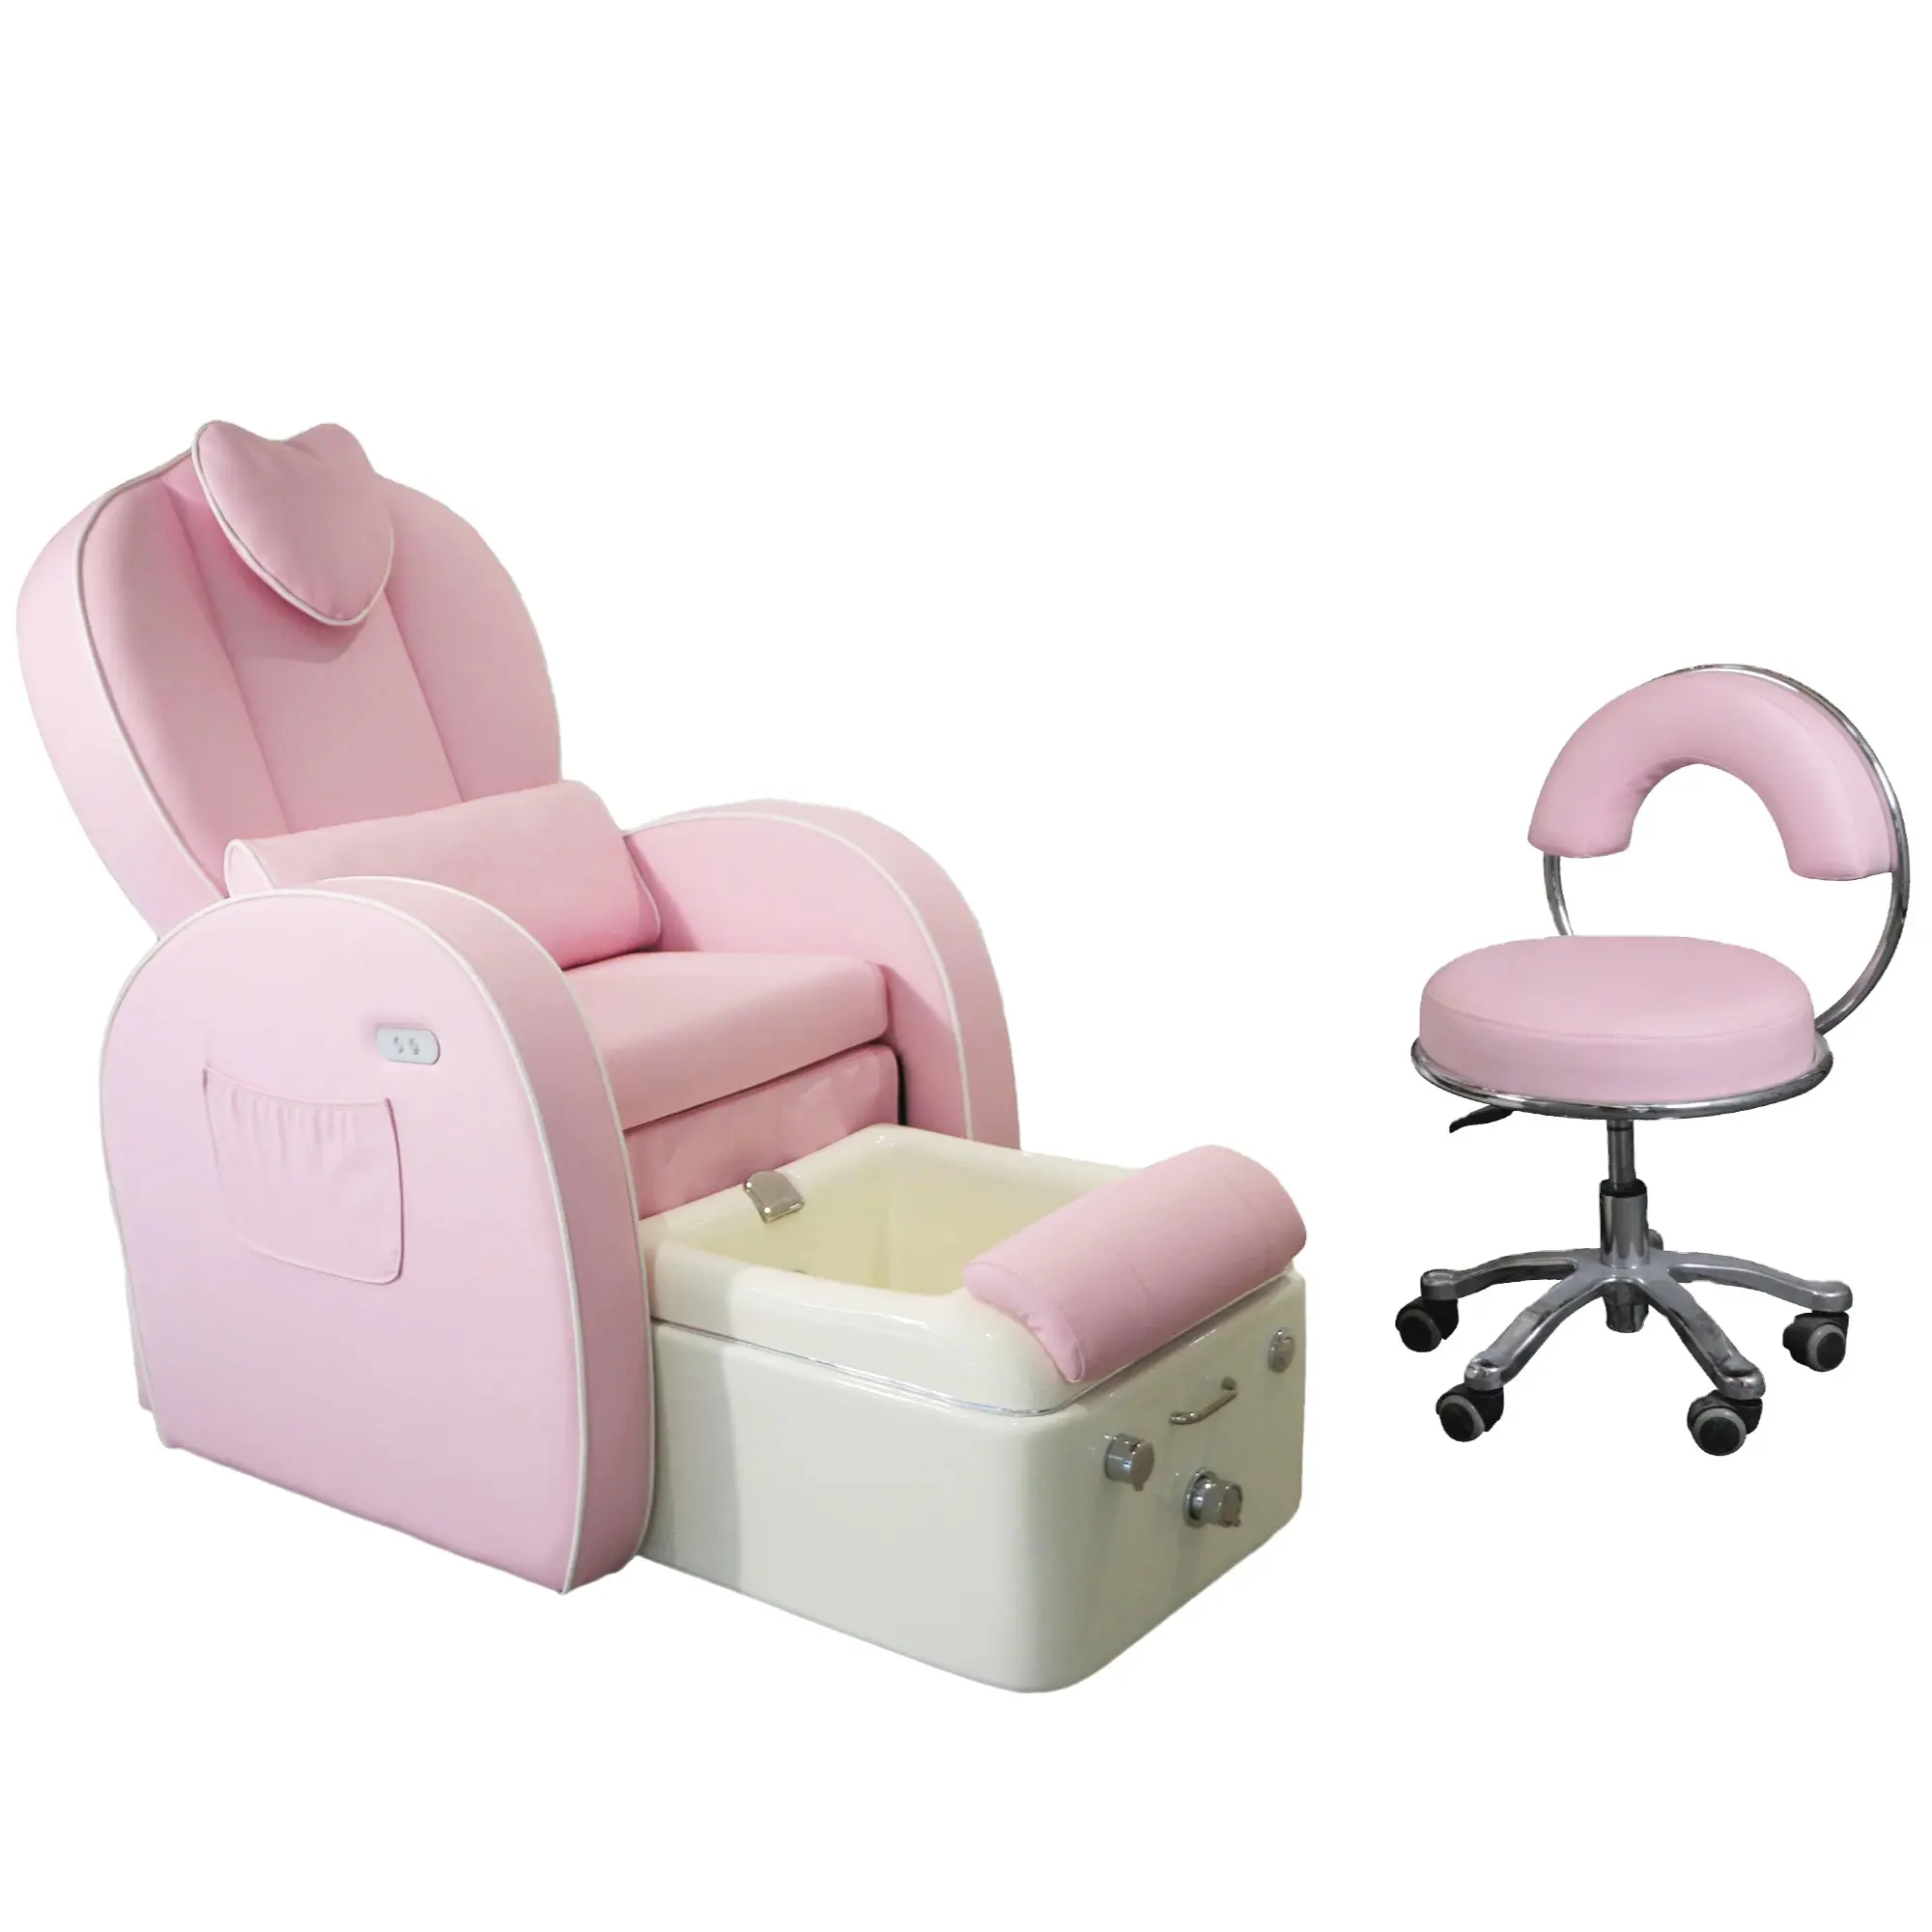 Health tec Schönheit rosa Salon Stühle Salon Möbel moderne Maniküre elektrische Massage Pediküre Stühle Luxus rosa Sets